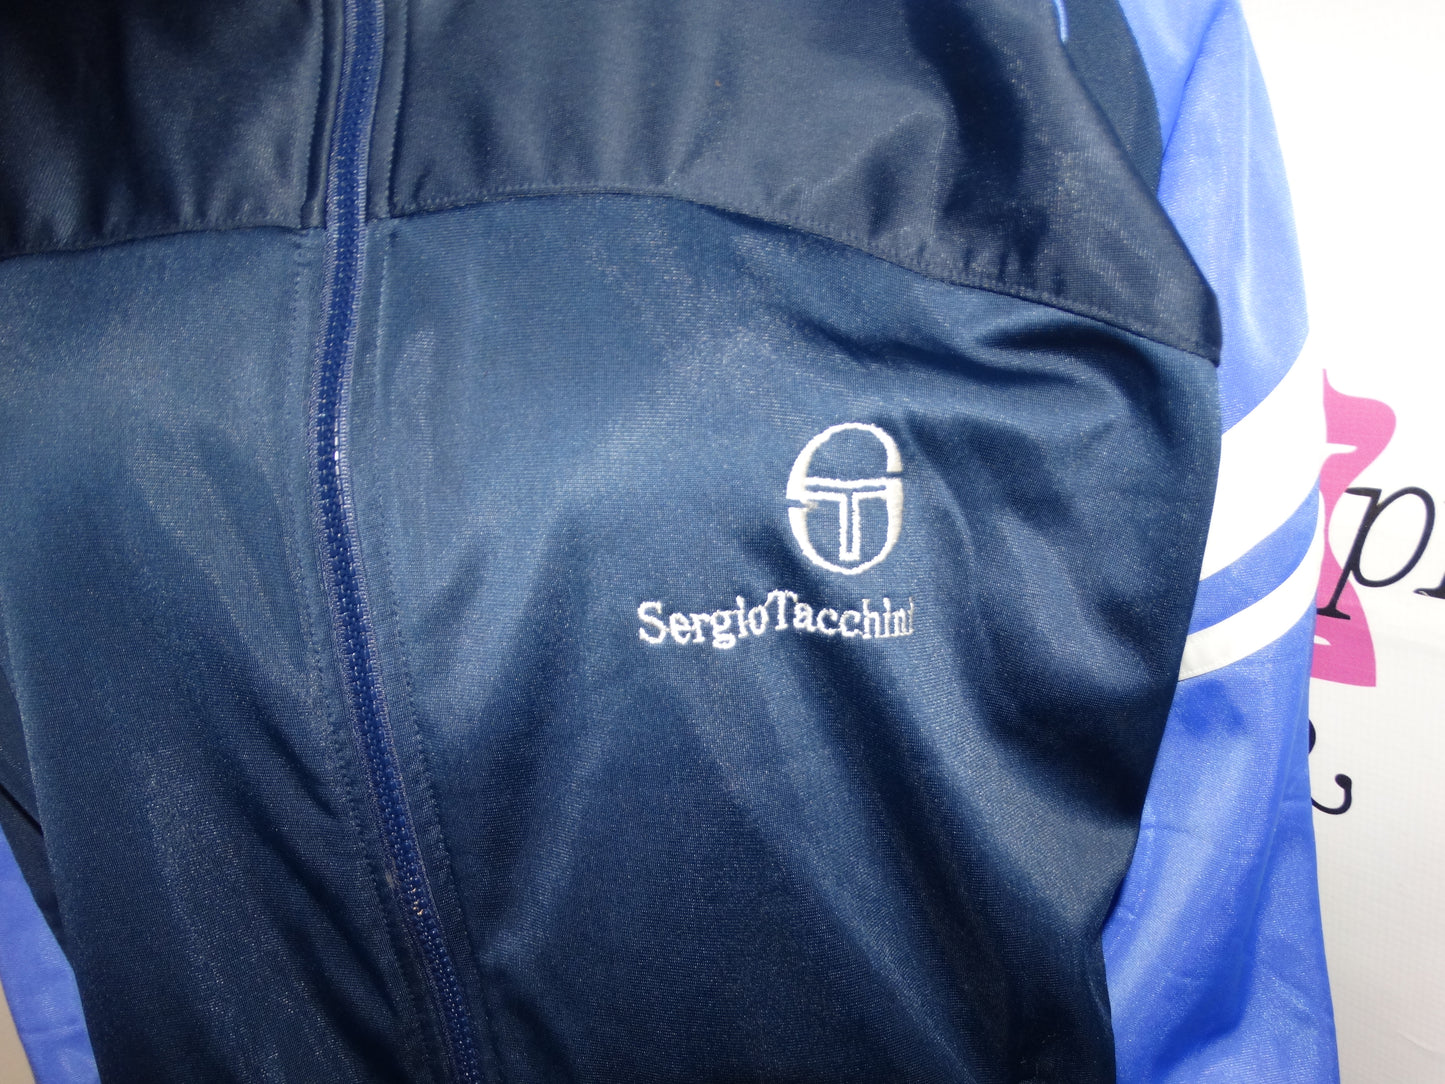 Vintage Sergio Tachhini Blue/White Jacket Size 1x